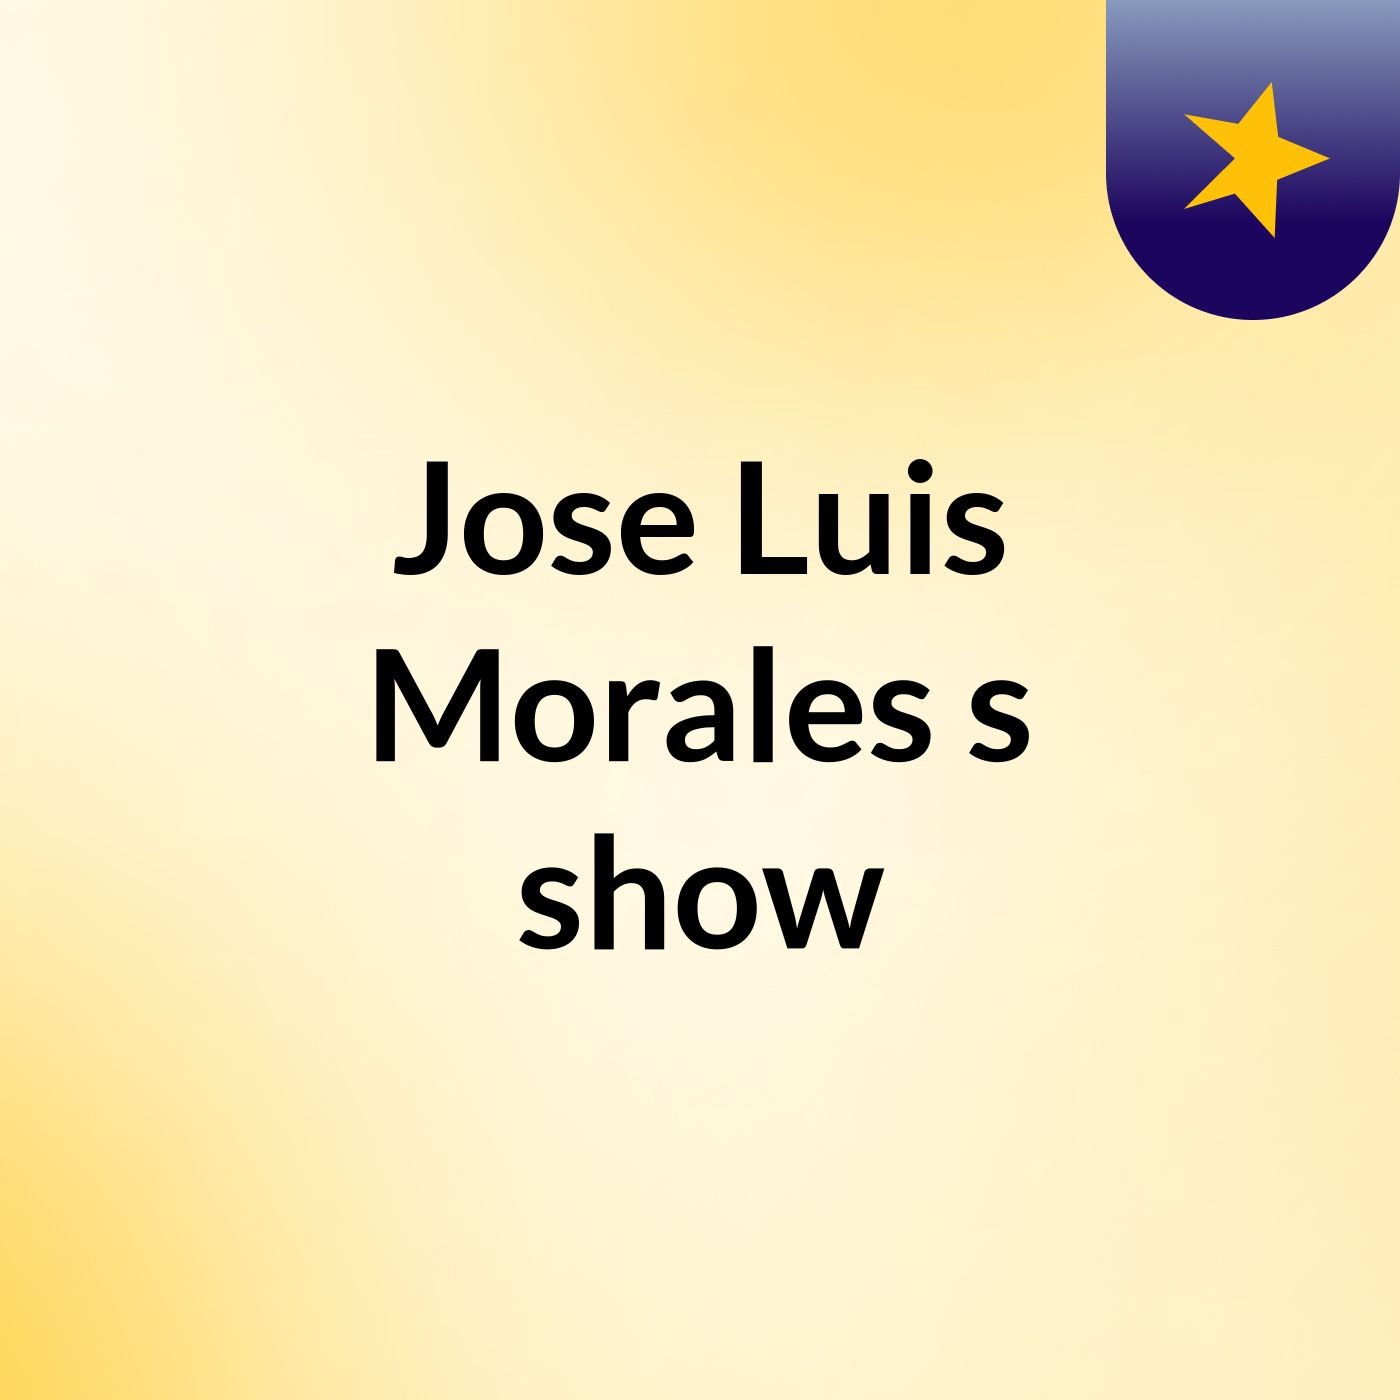 Jose Luis Morales's show